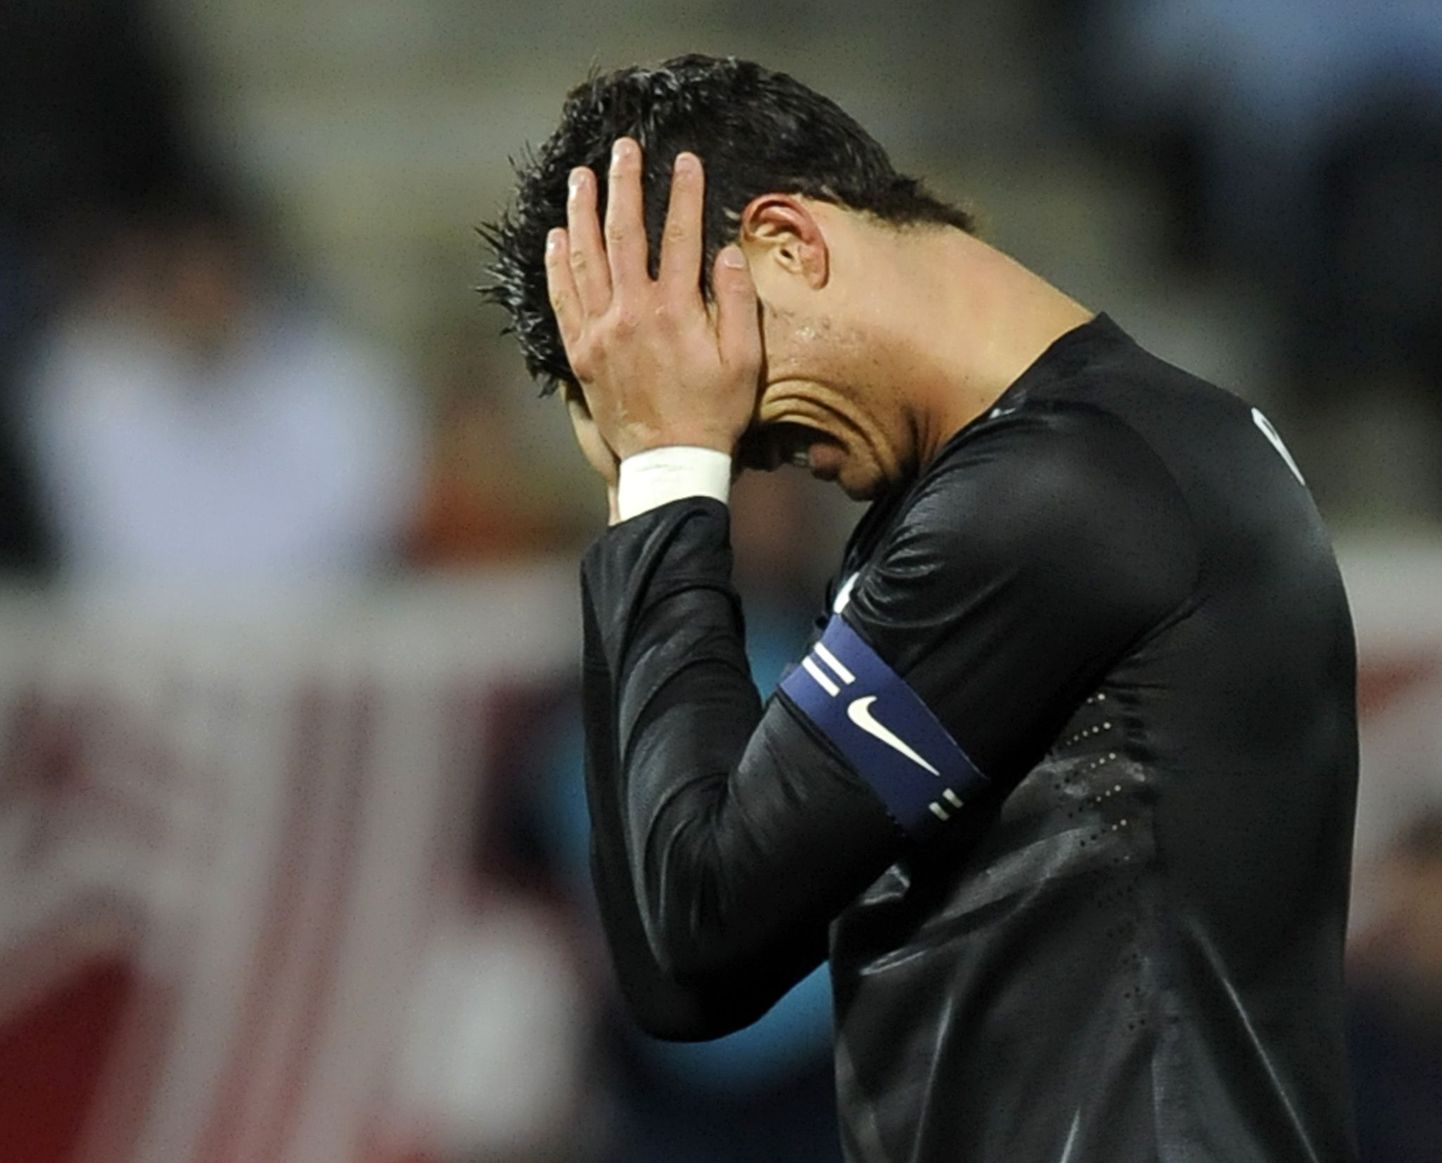 Pettunud Cristiano Ronaldo